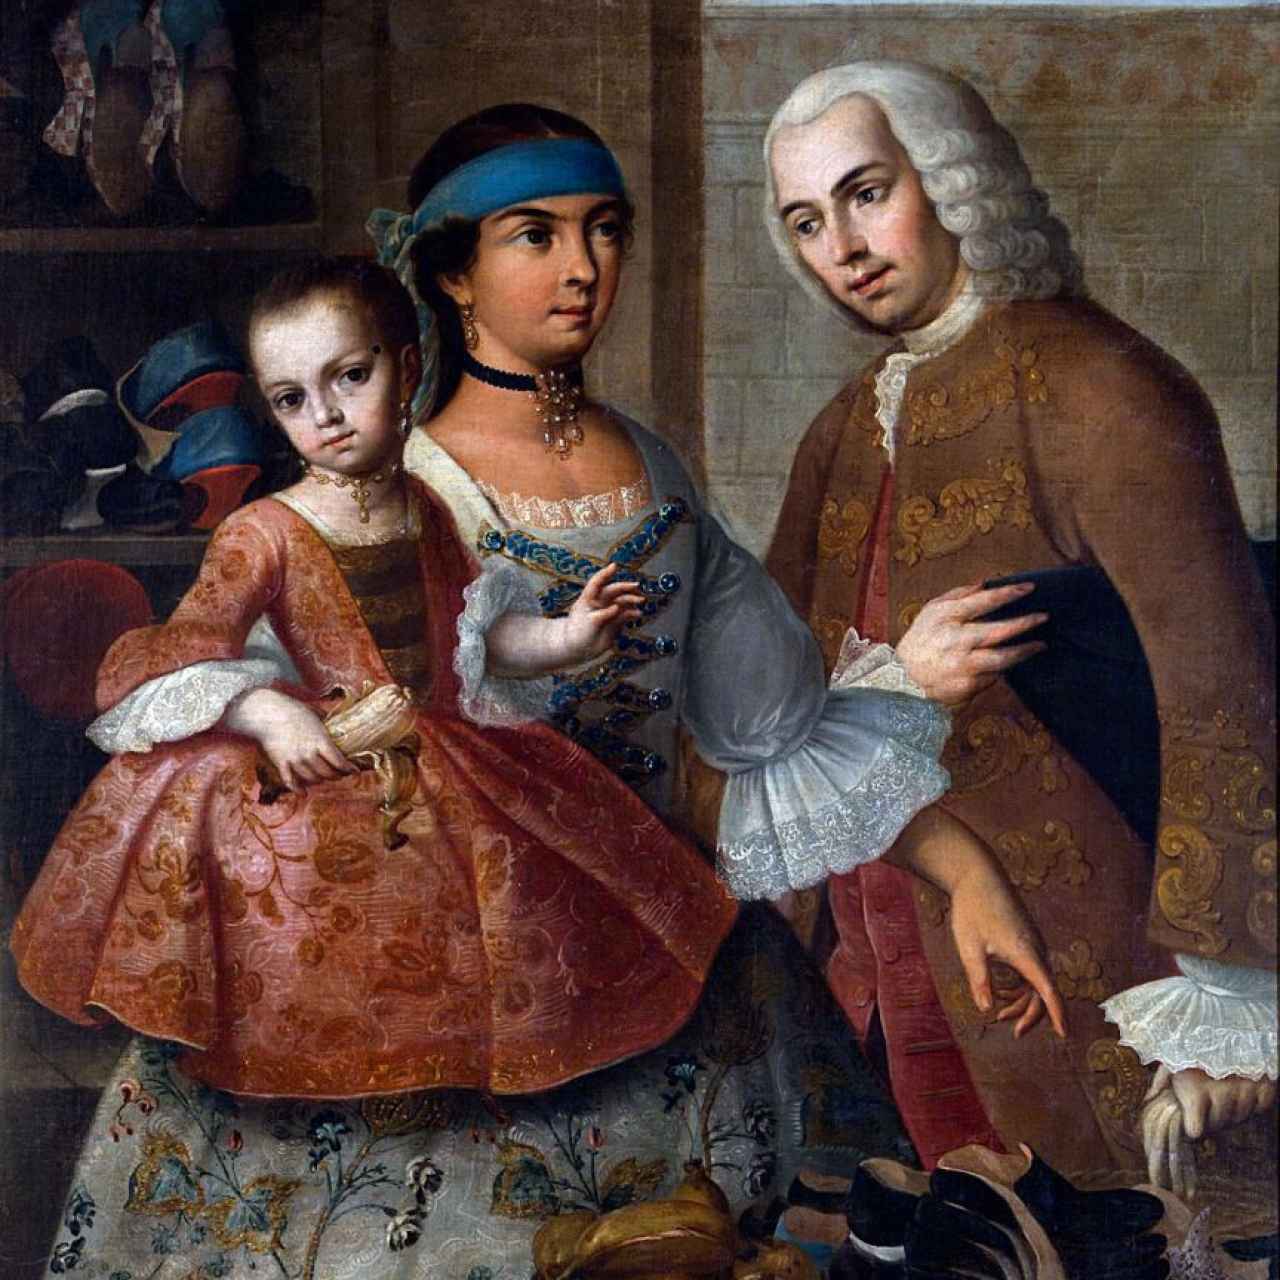 Un ejemplo de pintura de castas del siglo XVIII.